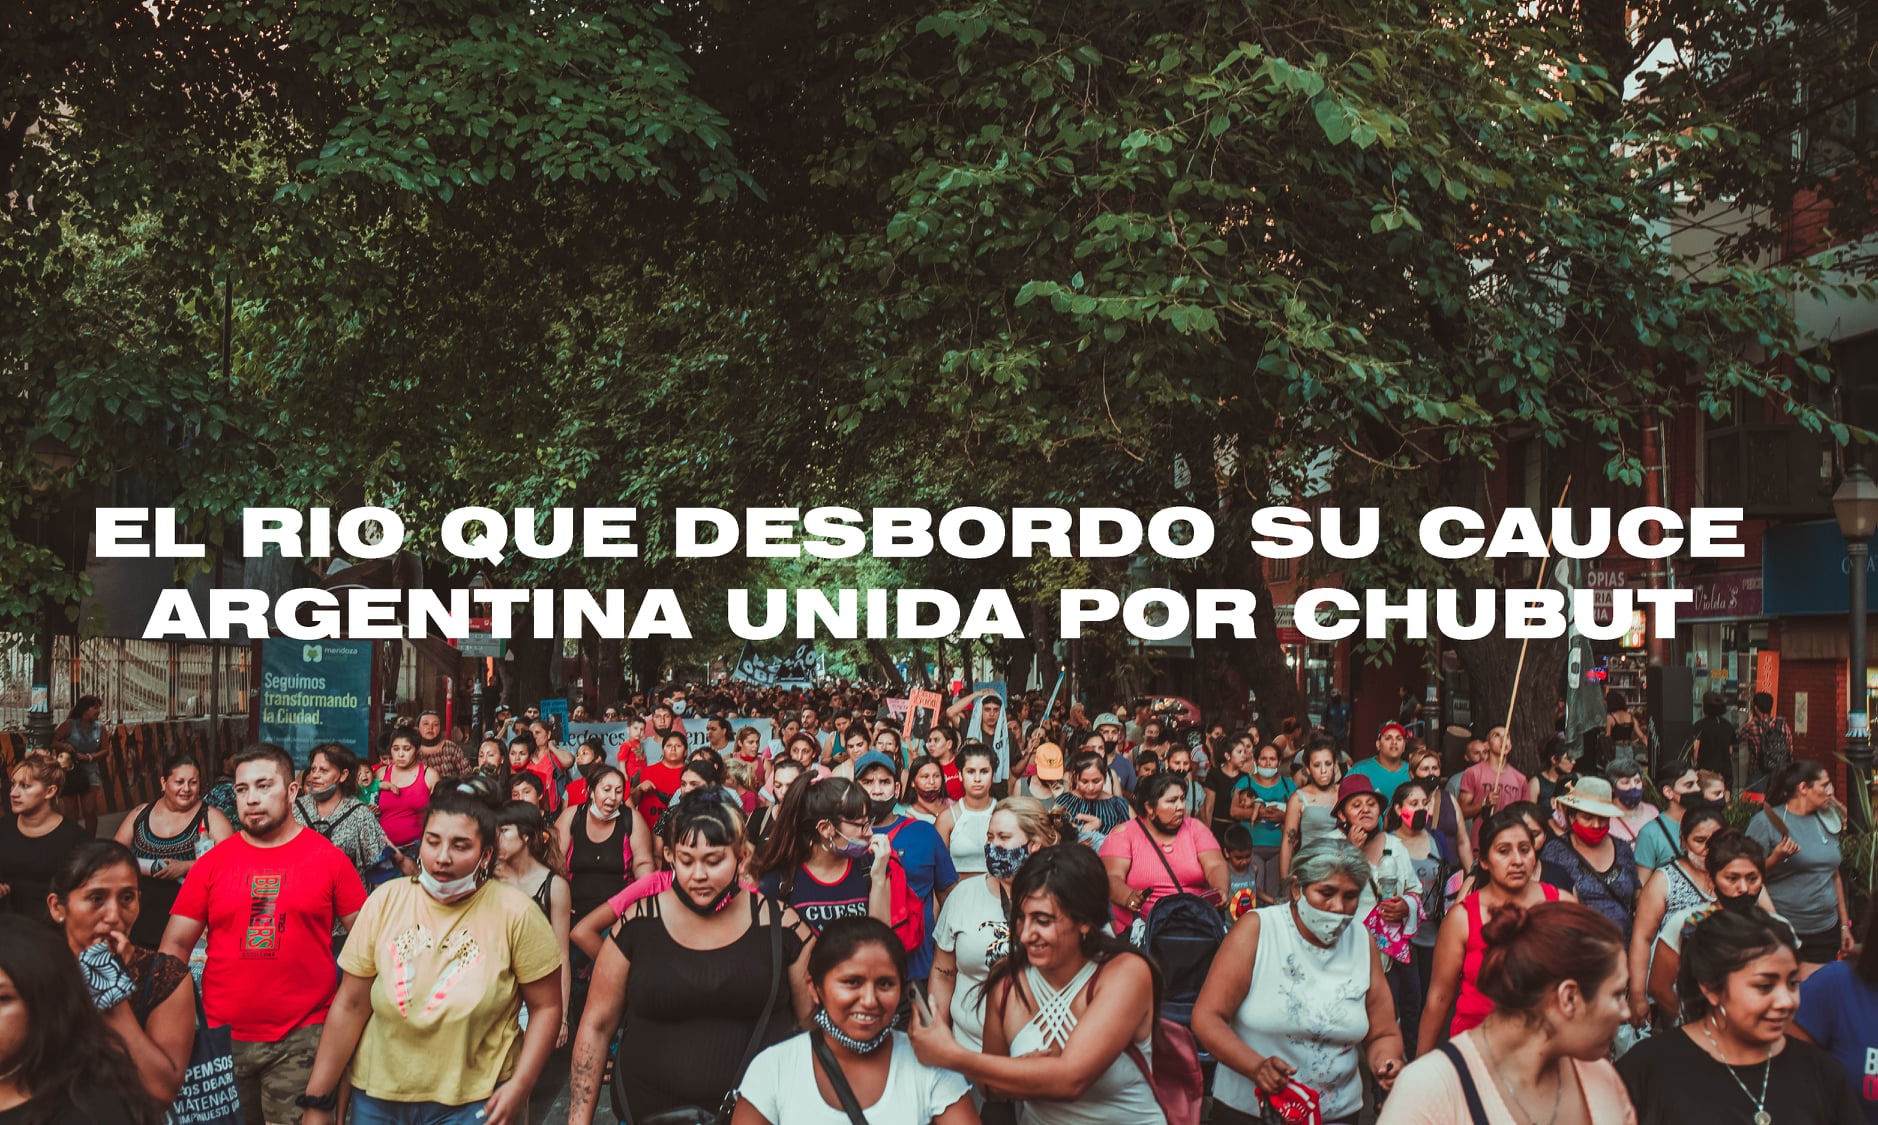 Puede ser una imagen de una o varias personas, personas de pie, al aire libre y texto que dice "EL RIO QUE DESBORDO SU CAUCE ARGENTINA UNIDA POR CHUBUT Seguimos PEMSOS"